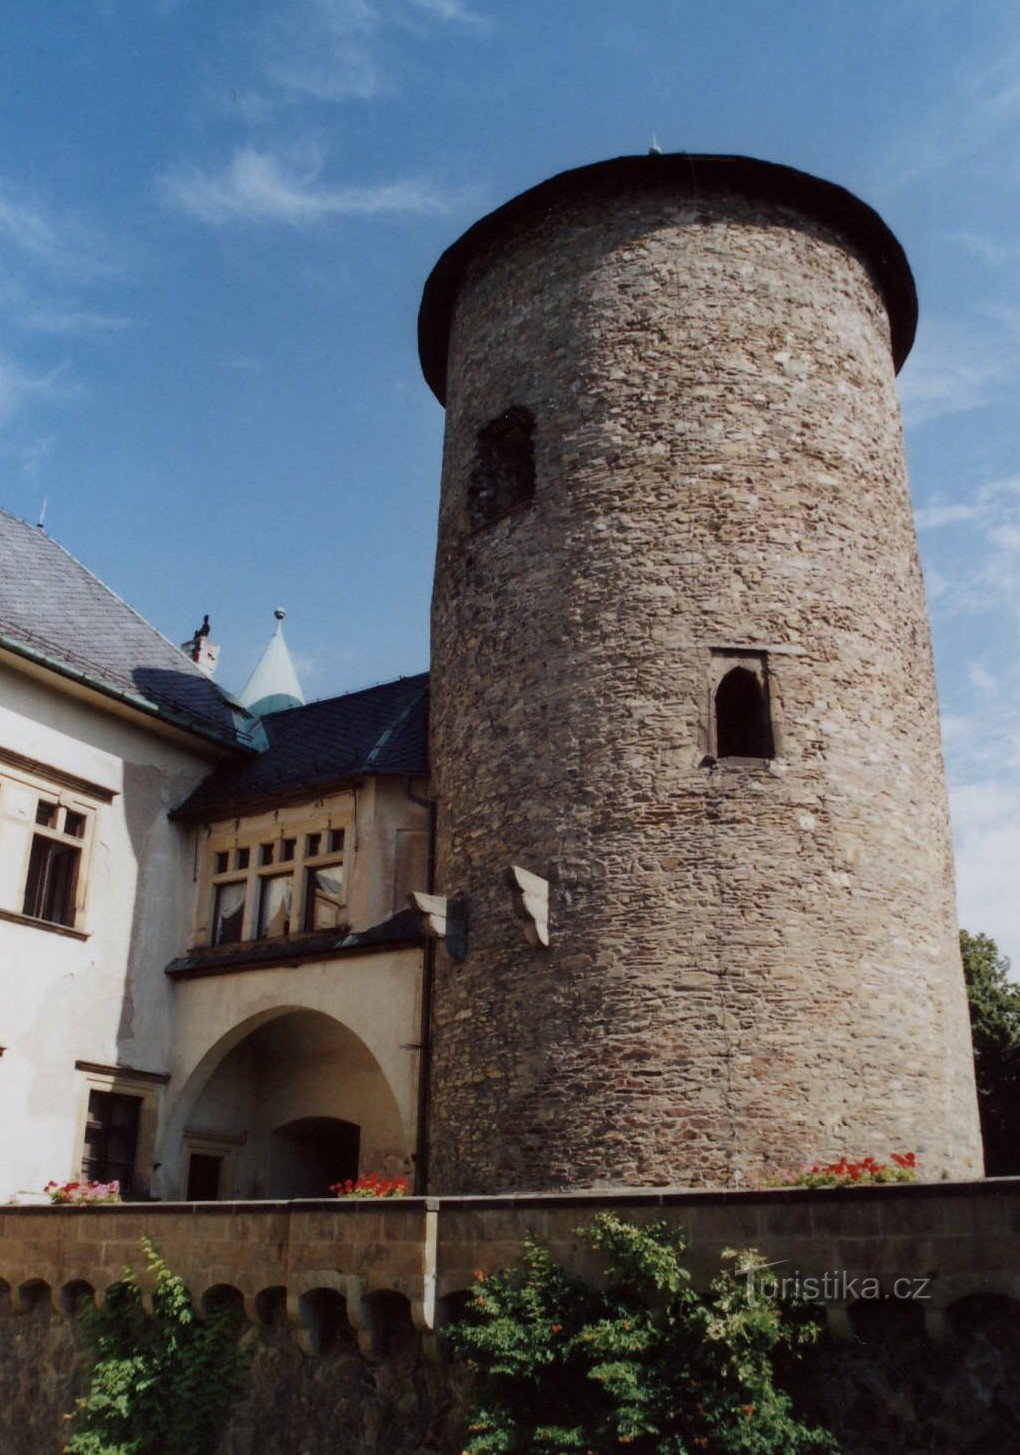 kasteelstem uit het midden van de 13e eeuw.